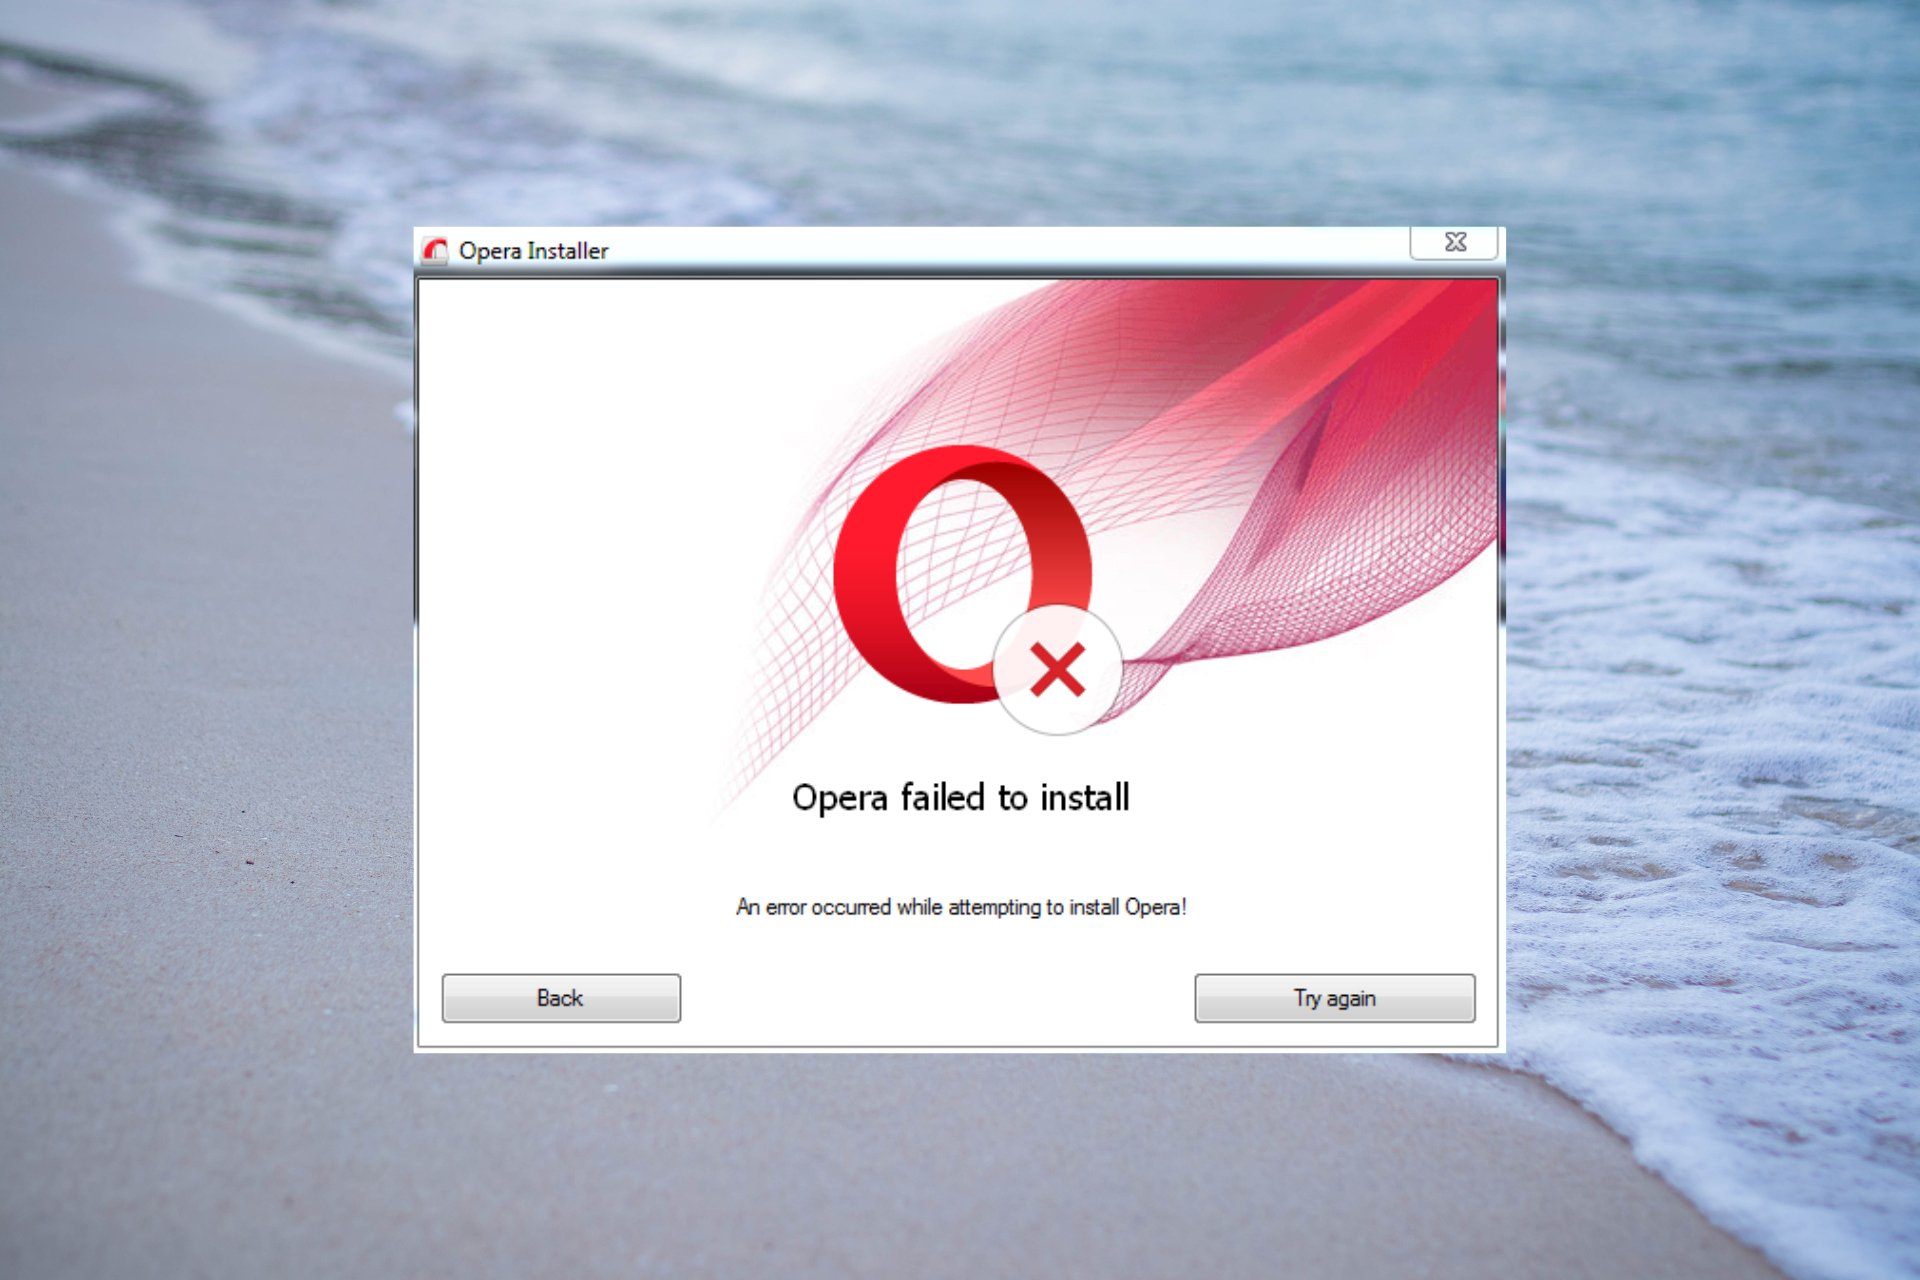 How do I fix Opera if it failed to install